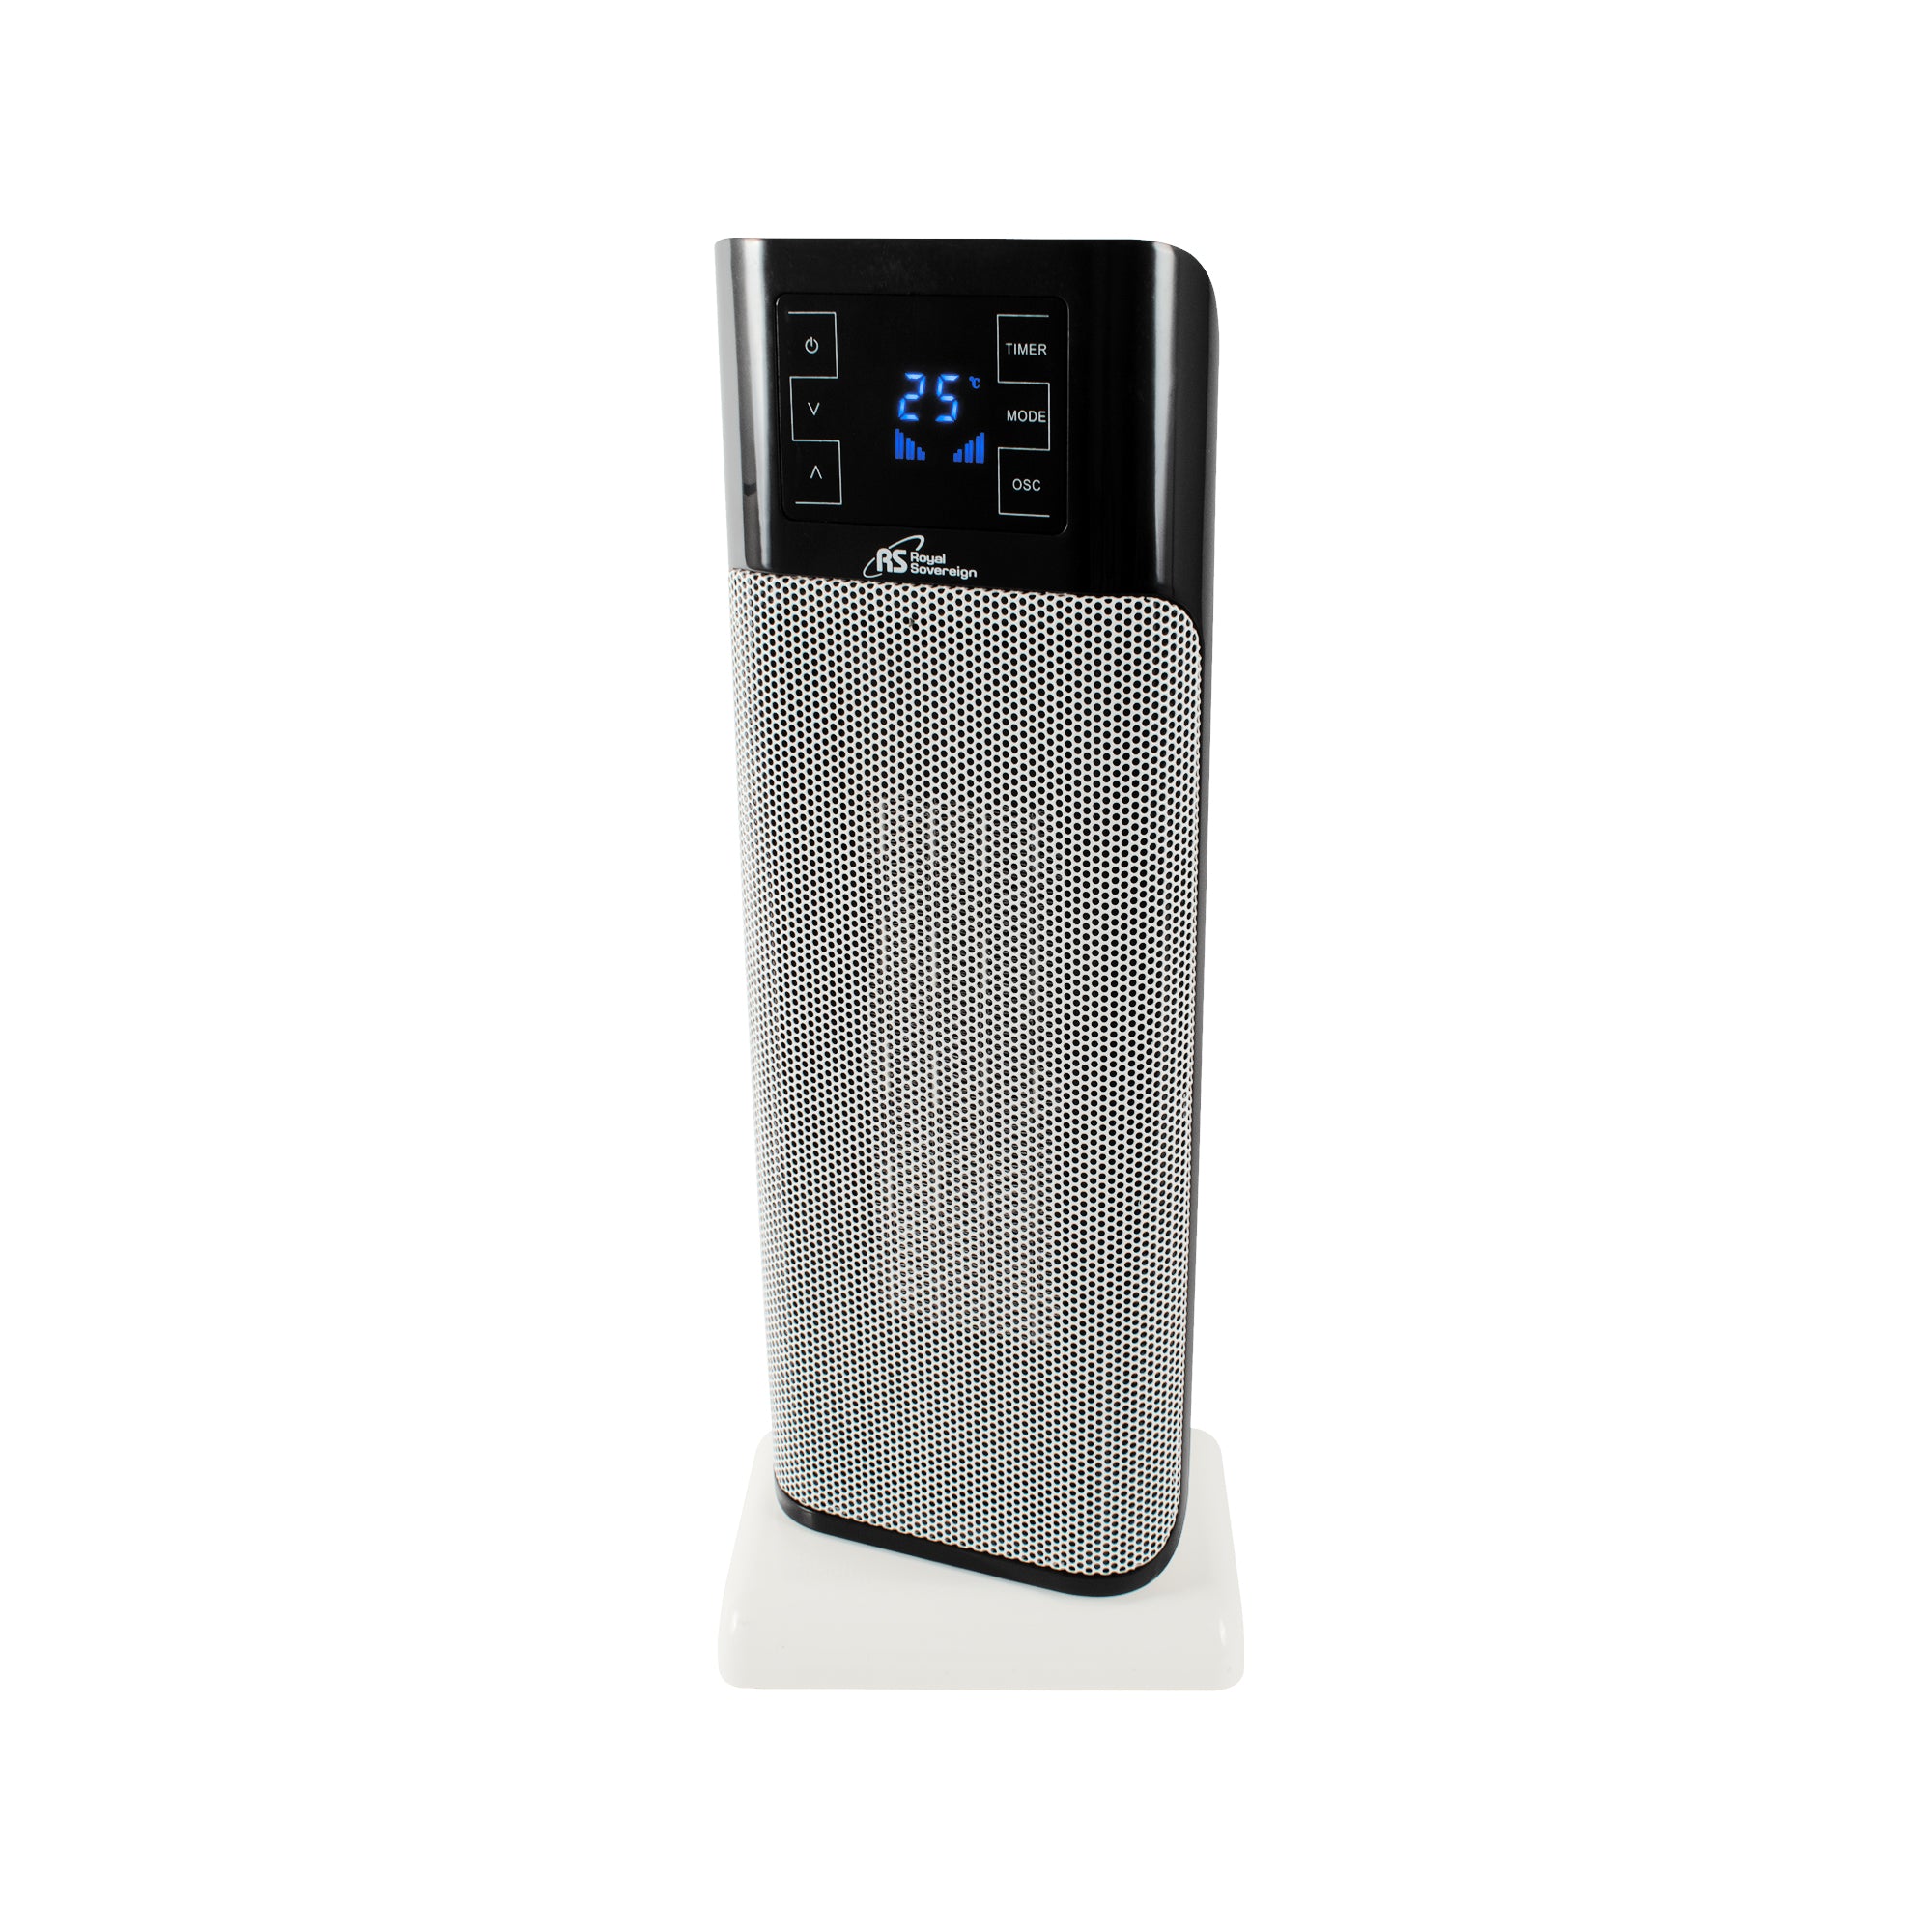 HCE-220, 22” Digital Oscillating Ceramic Tower Heater